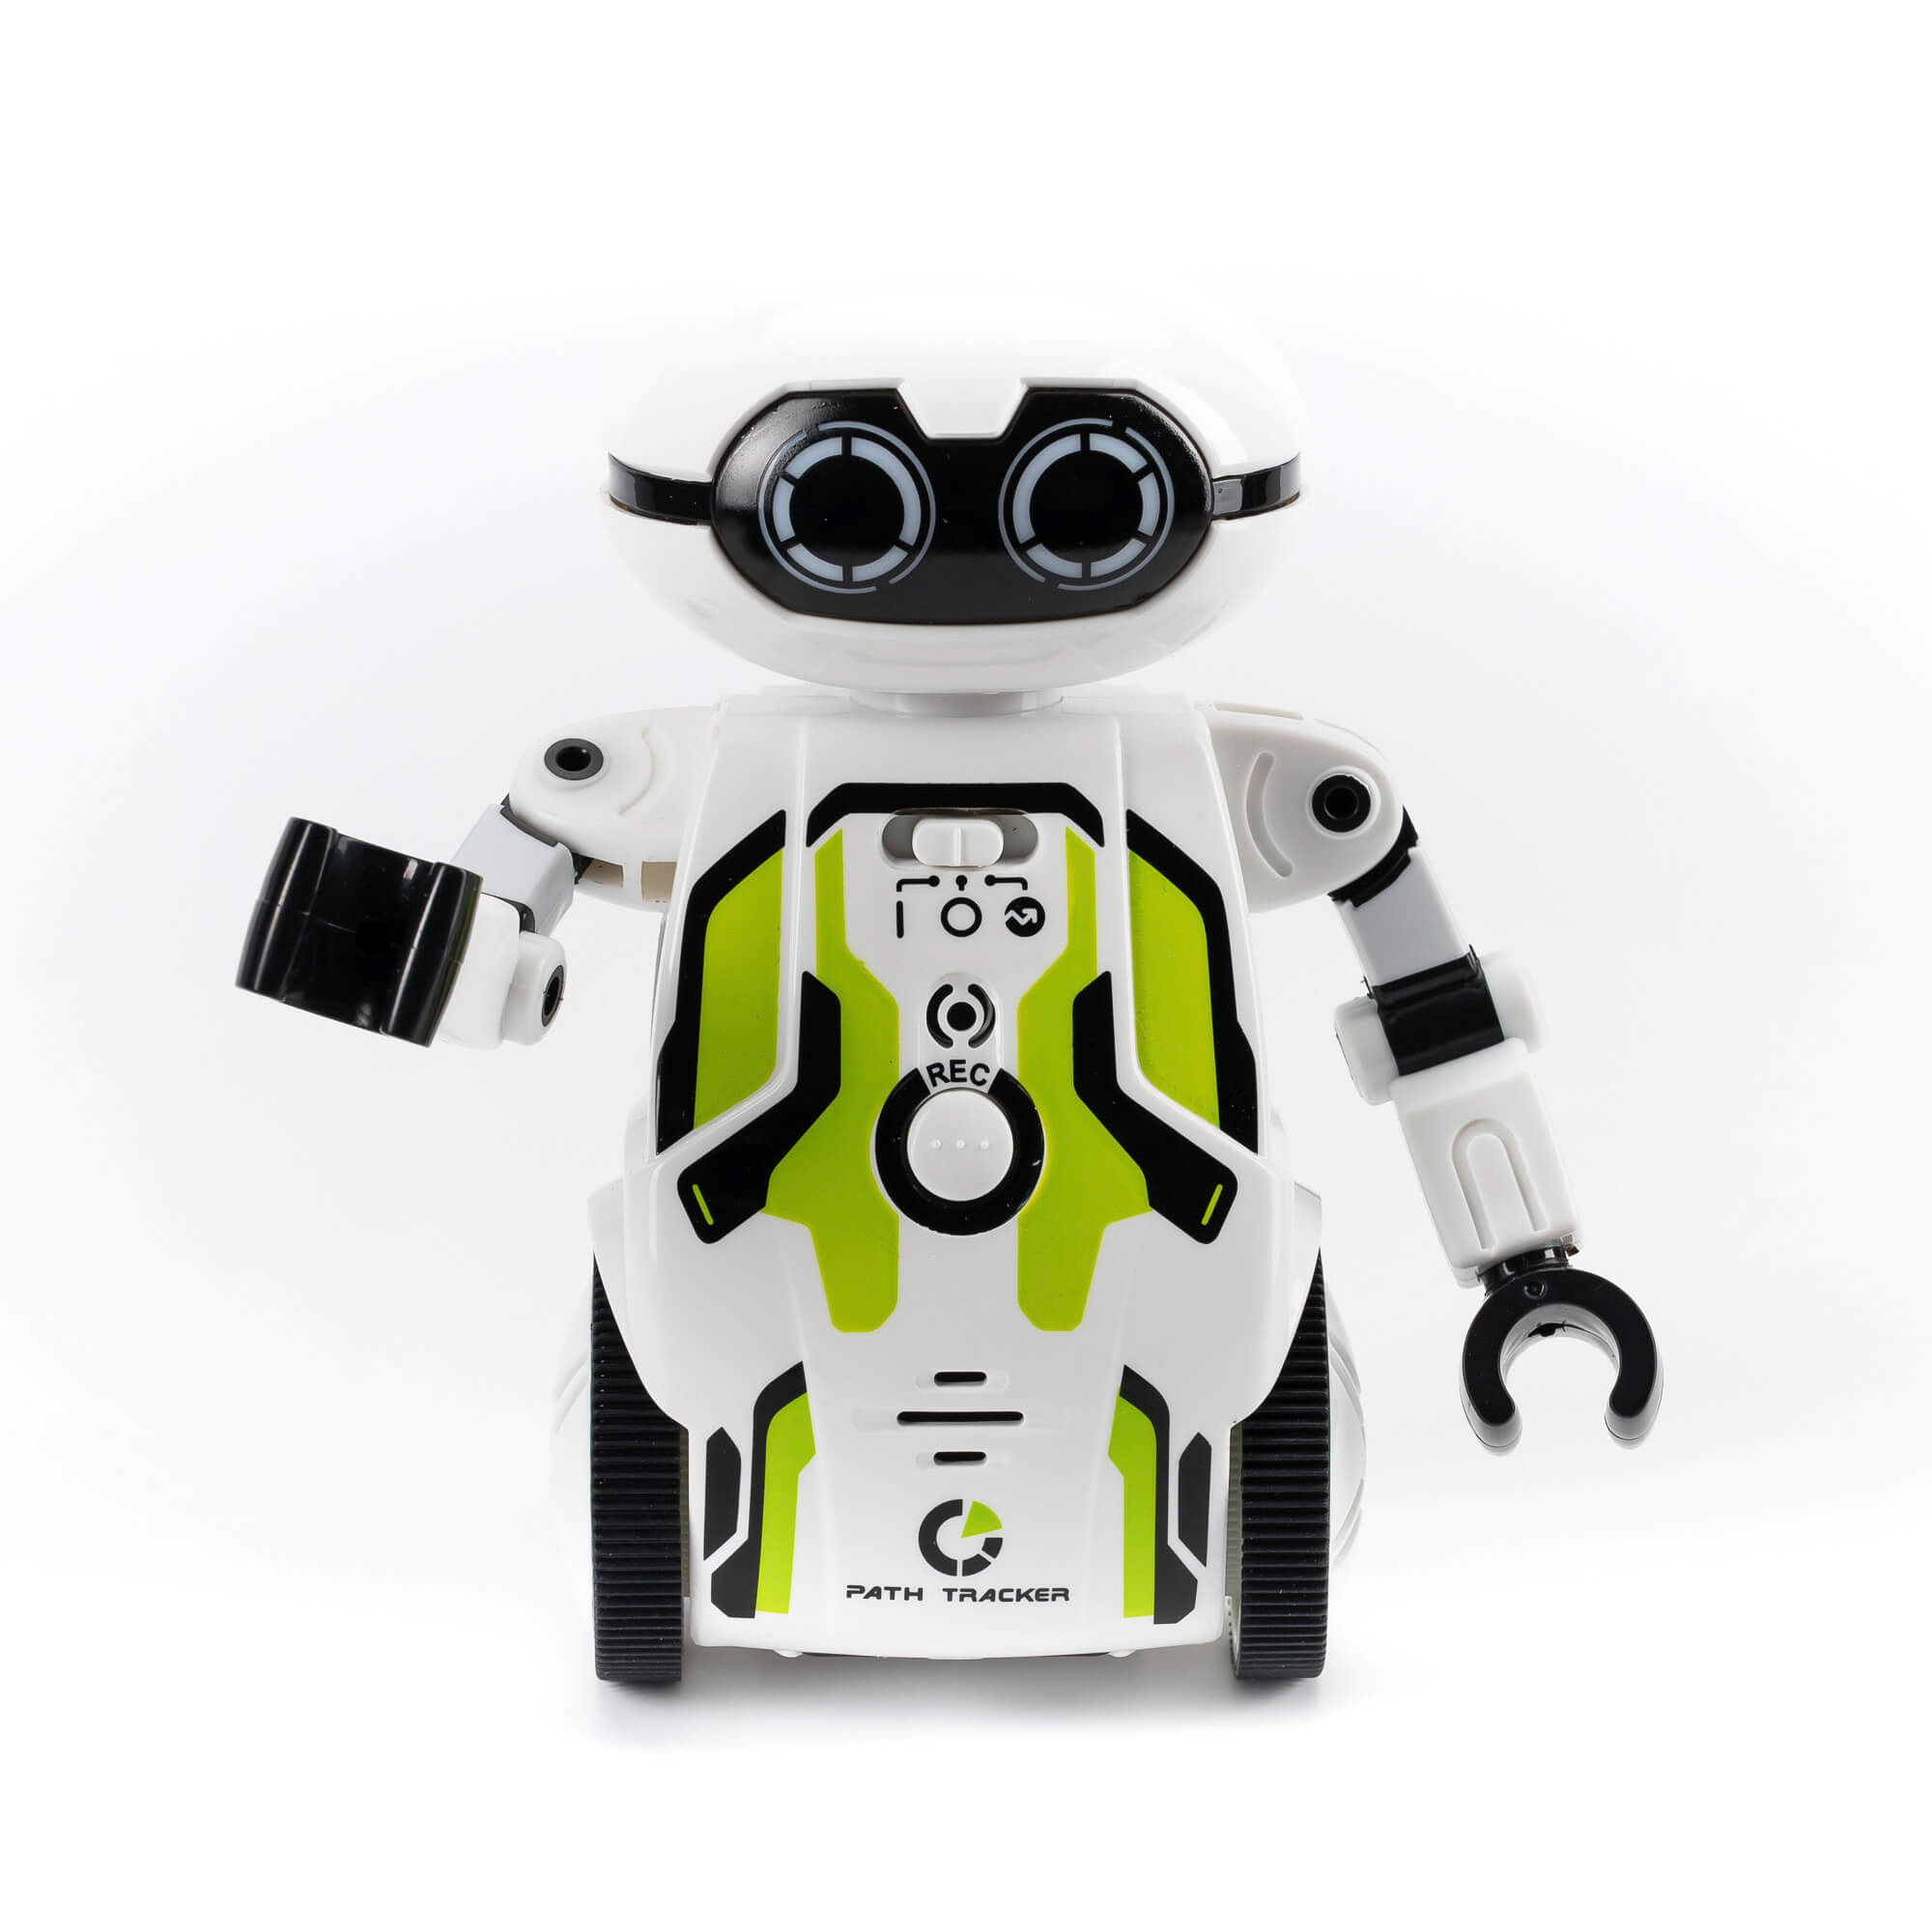 Silverlit Робот 88044-1 Мэйз брейкер  зеленый (Maze Breaker) - Уфа 